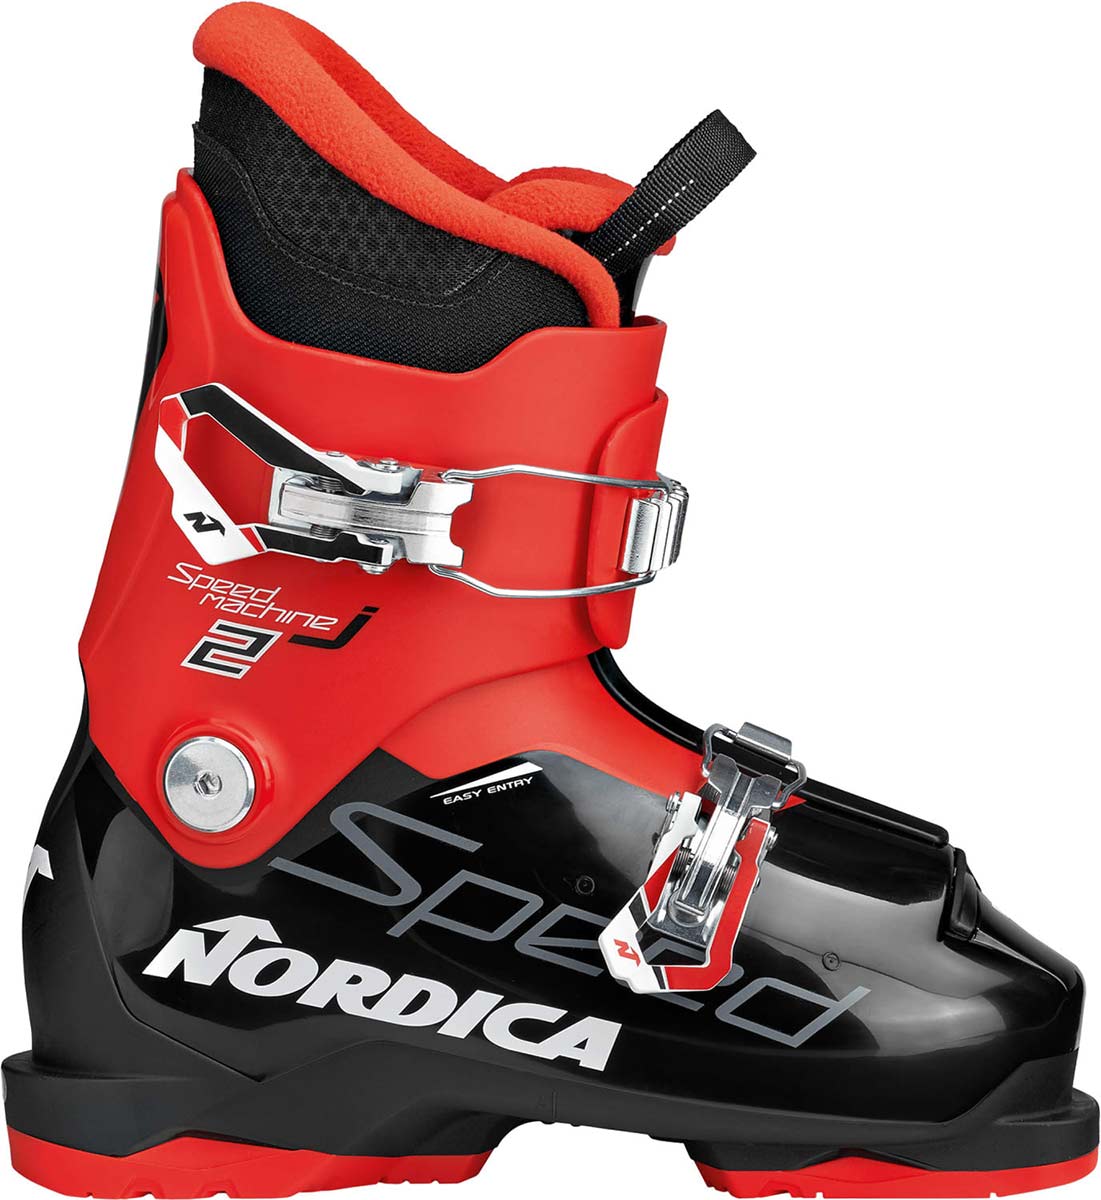 Kids & Juniors Ski Boots | Glacier Ski Shop